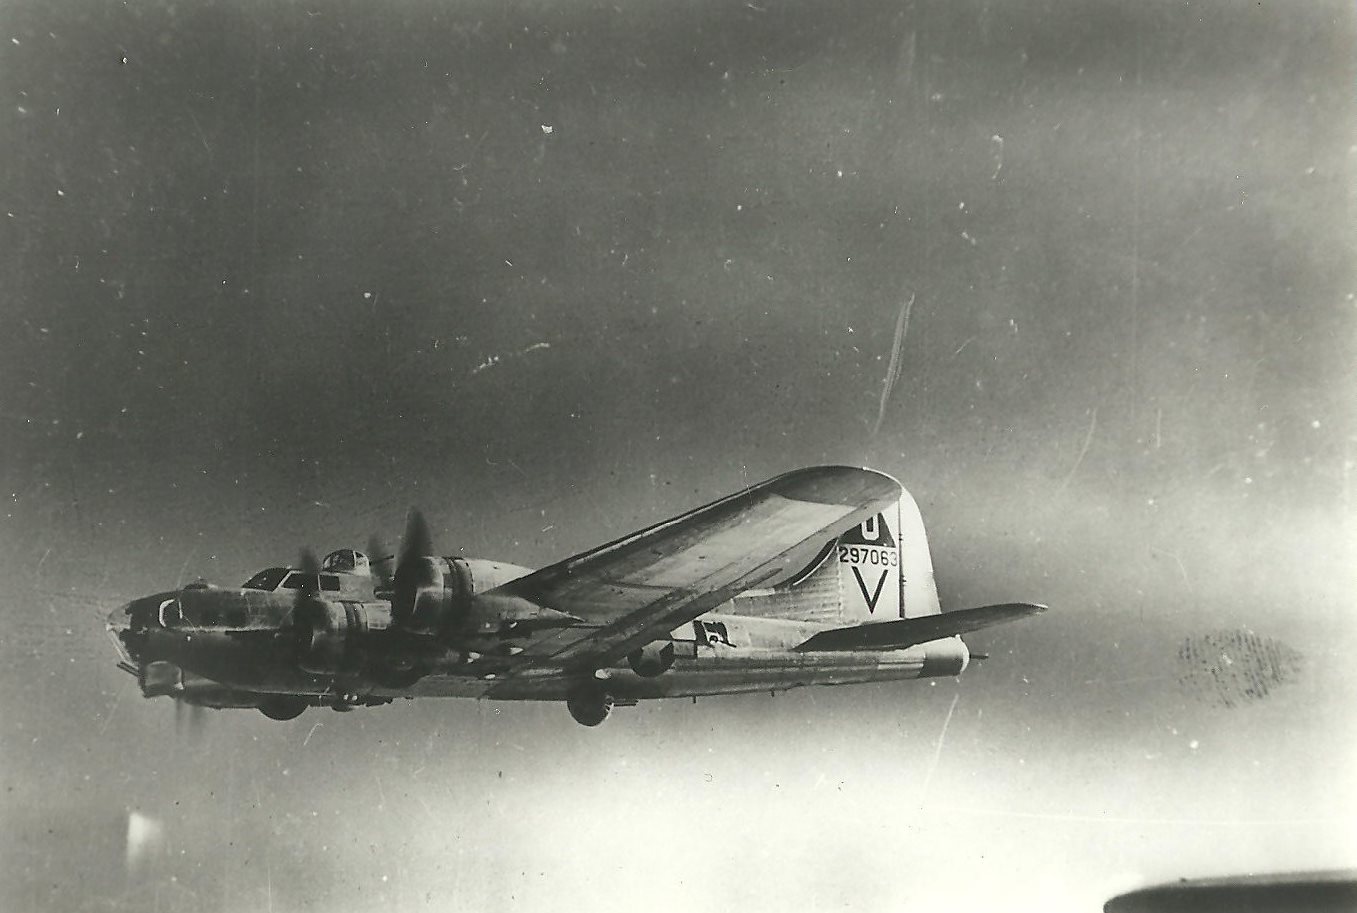 B-17 42-97063